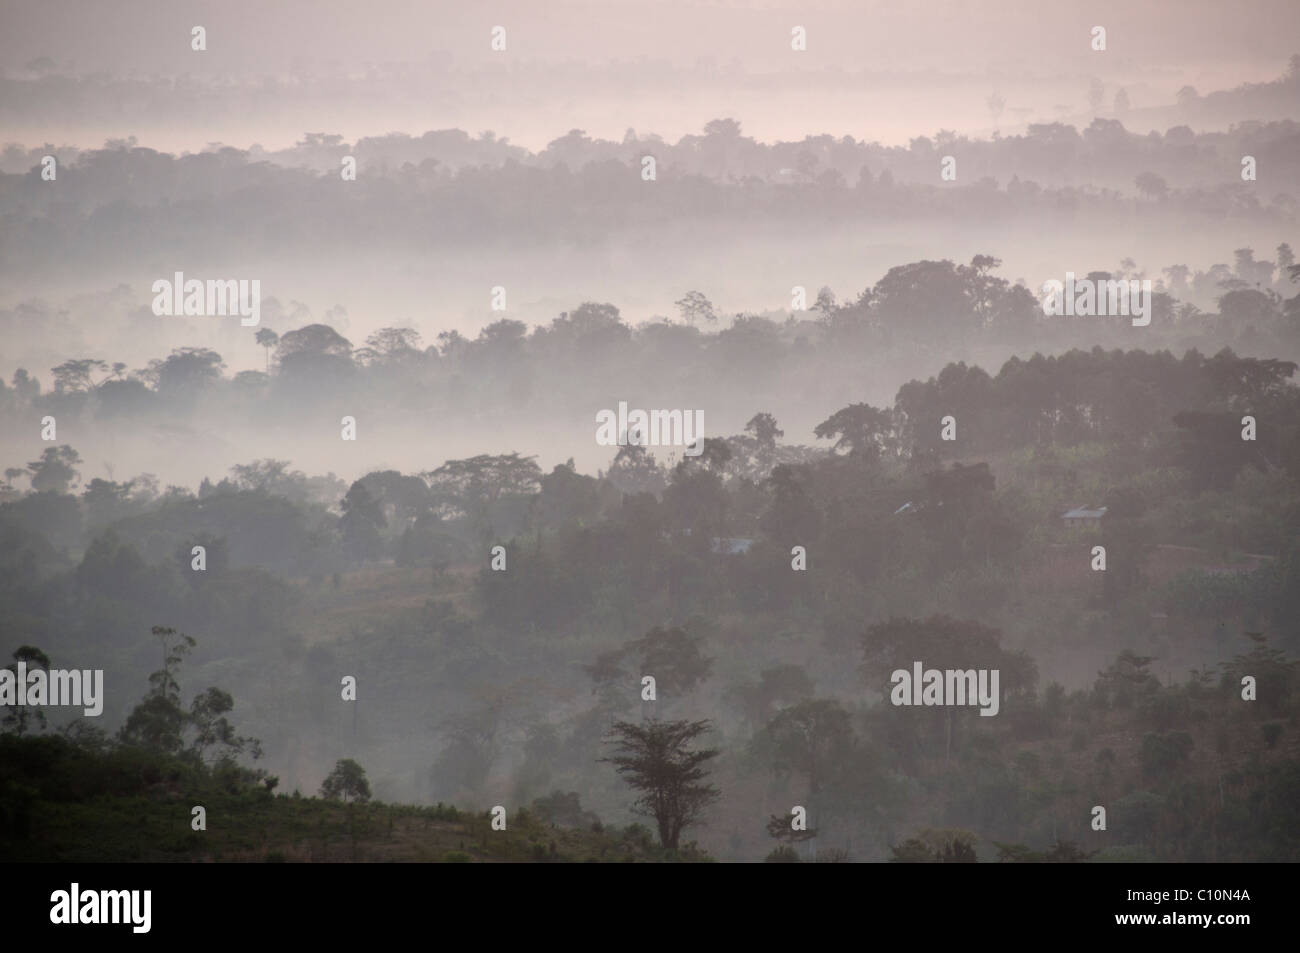 Uganda 2011. Mubende sunrise - misty landscape Stock Photo